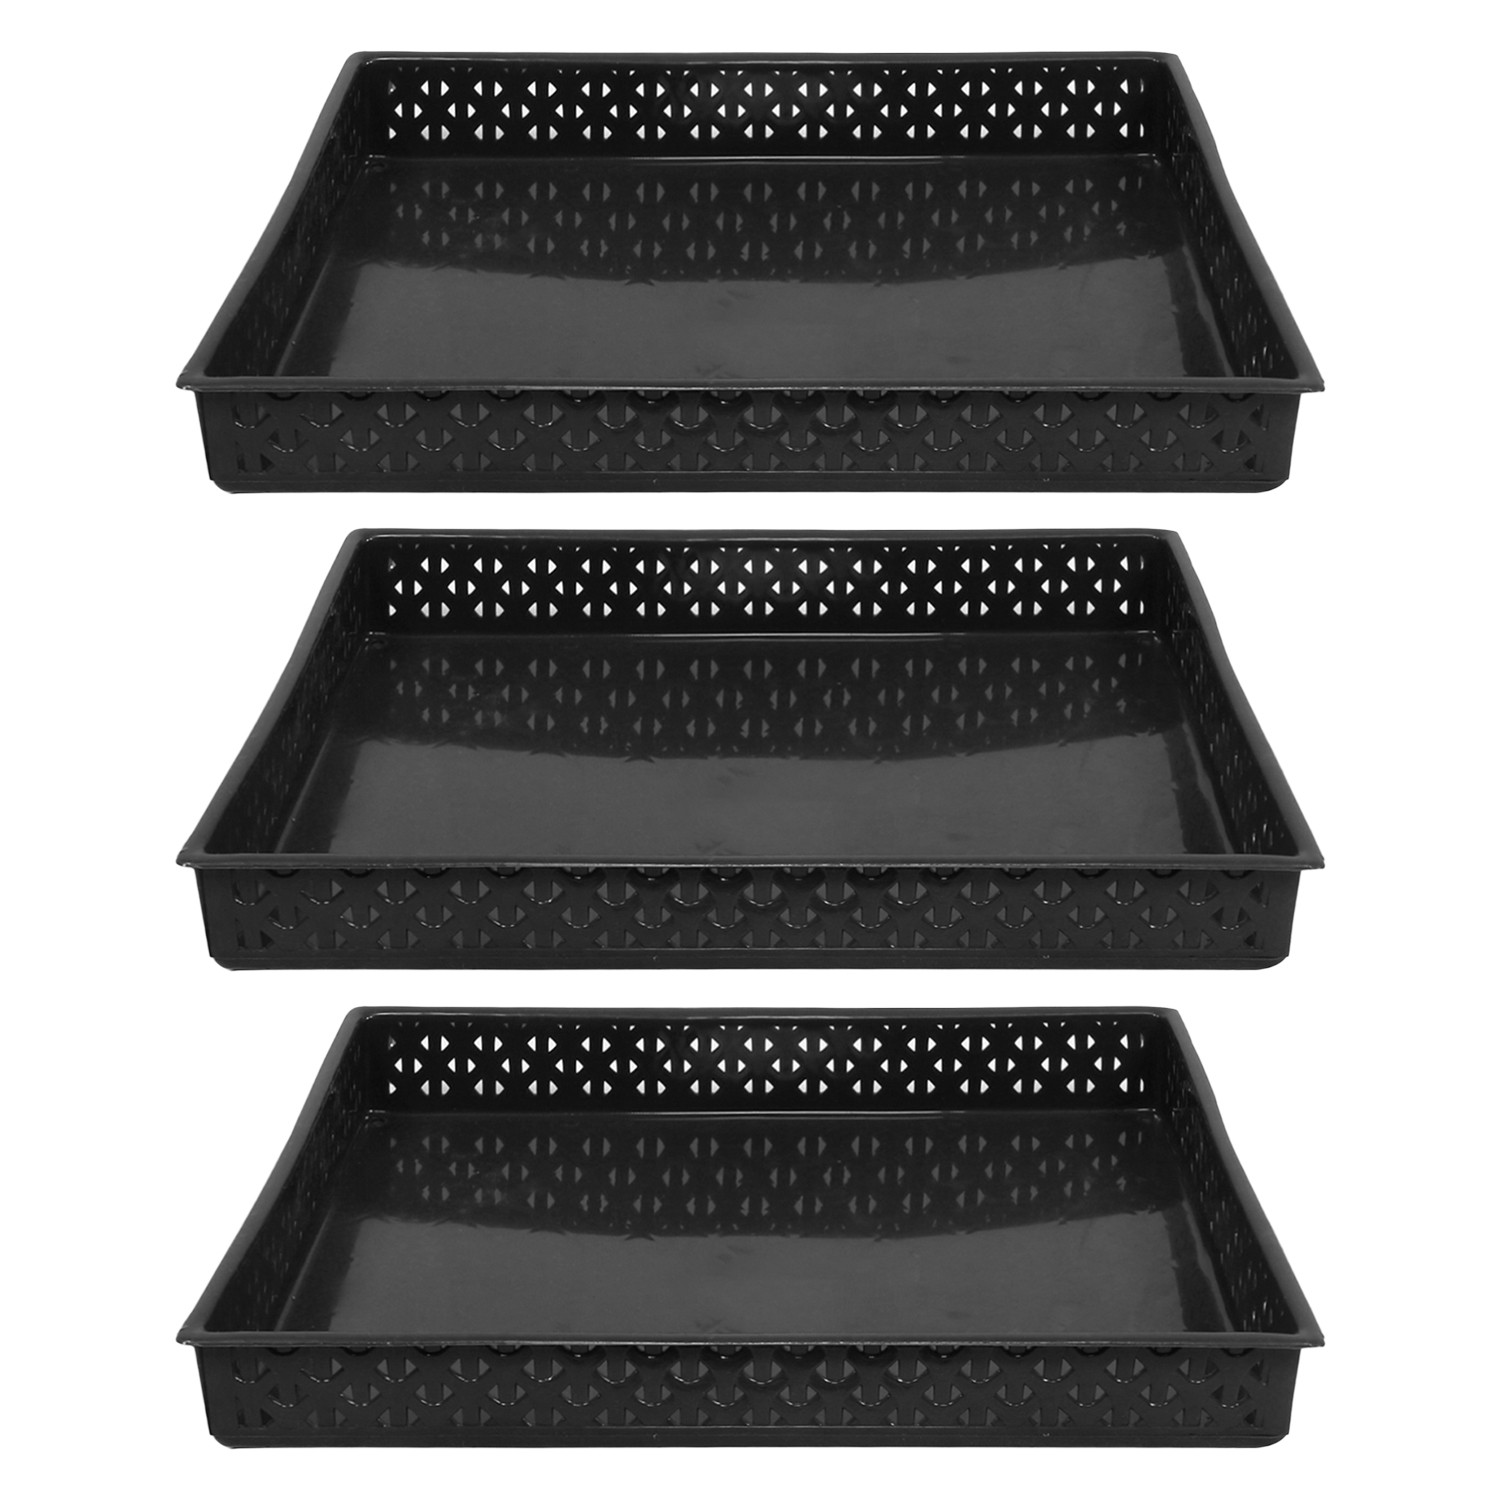 Kuber Industries Storage Tray|Versatile Plastic Storage Organizer|Rectangular Tray for Kitchen Storage|Storage Tray for office|ALEXA-15 (Black)